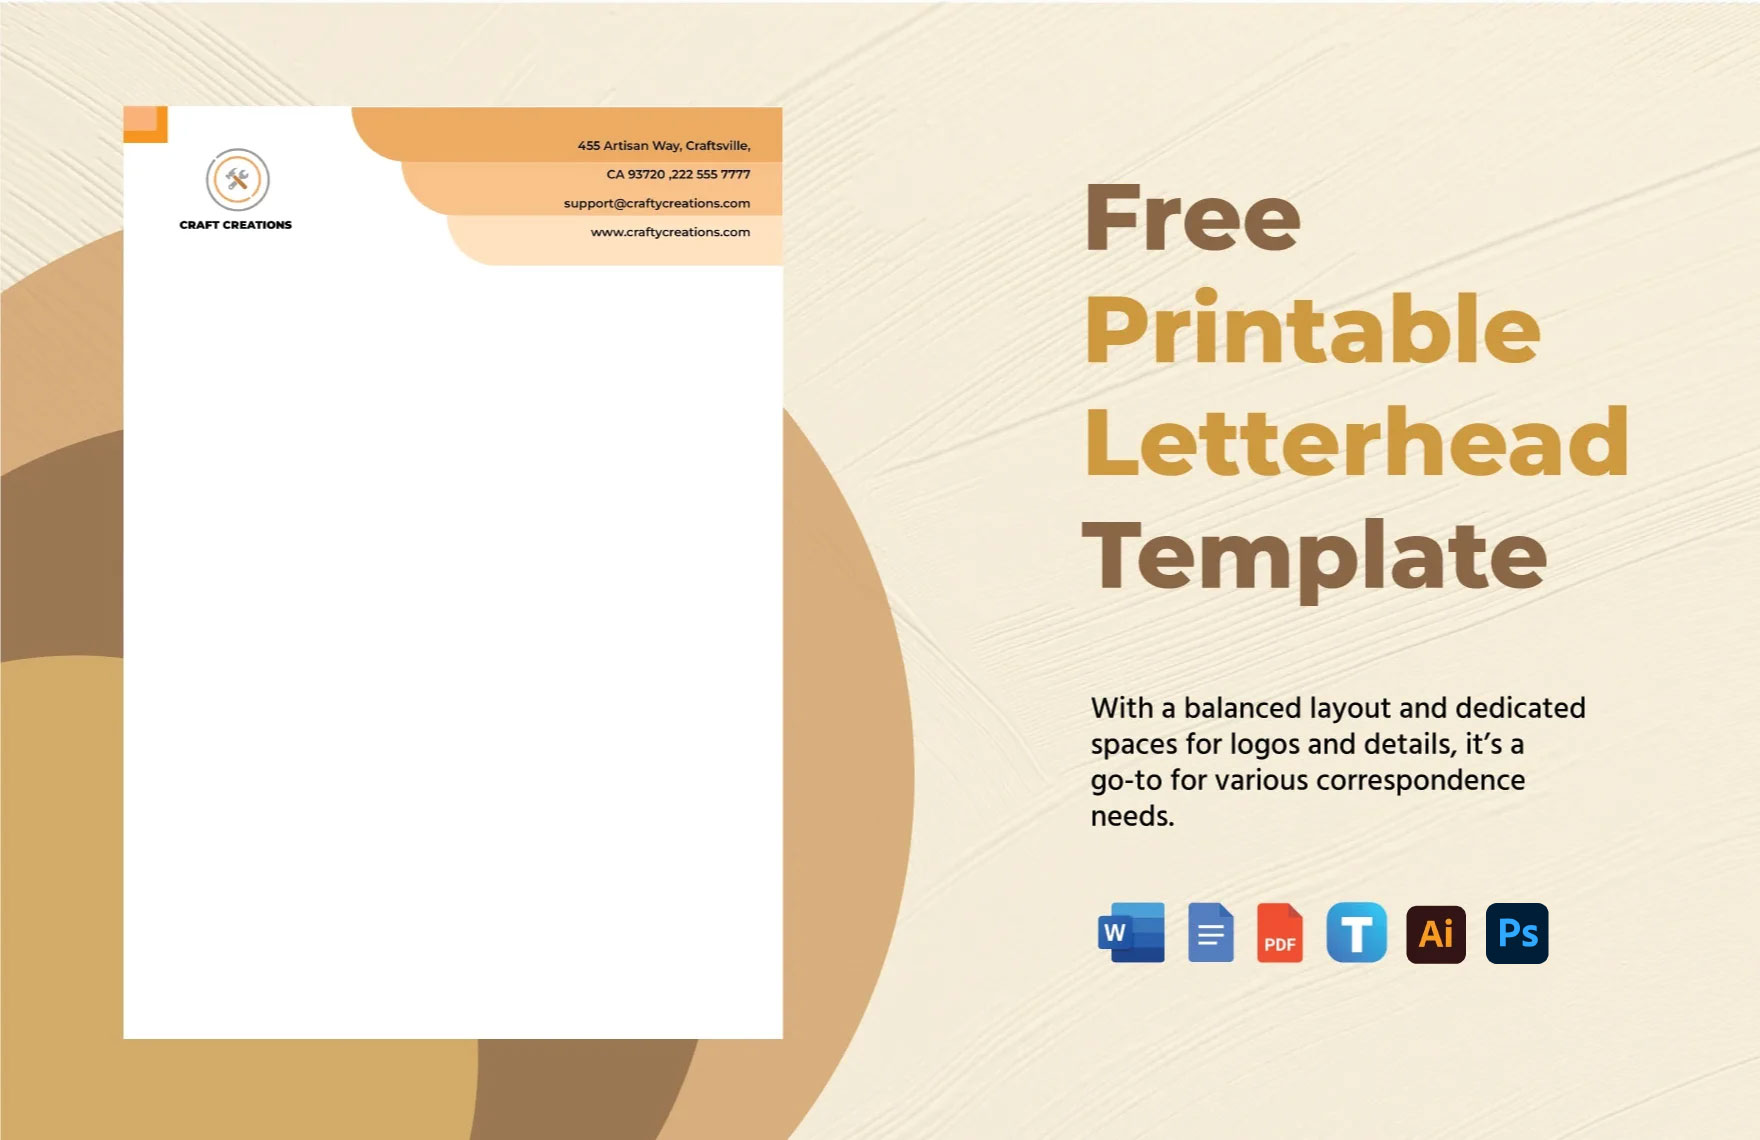 Free Printable Letterhead Template